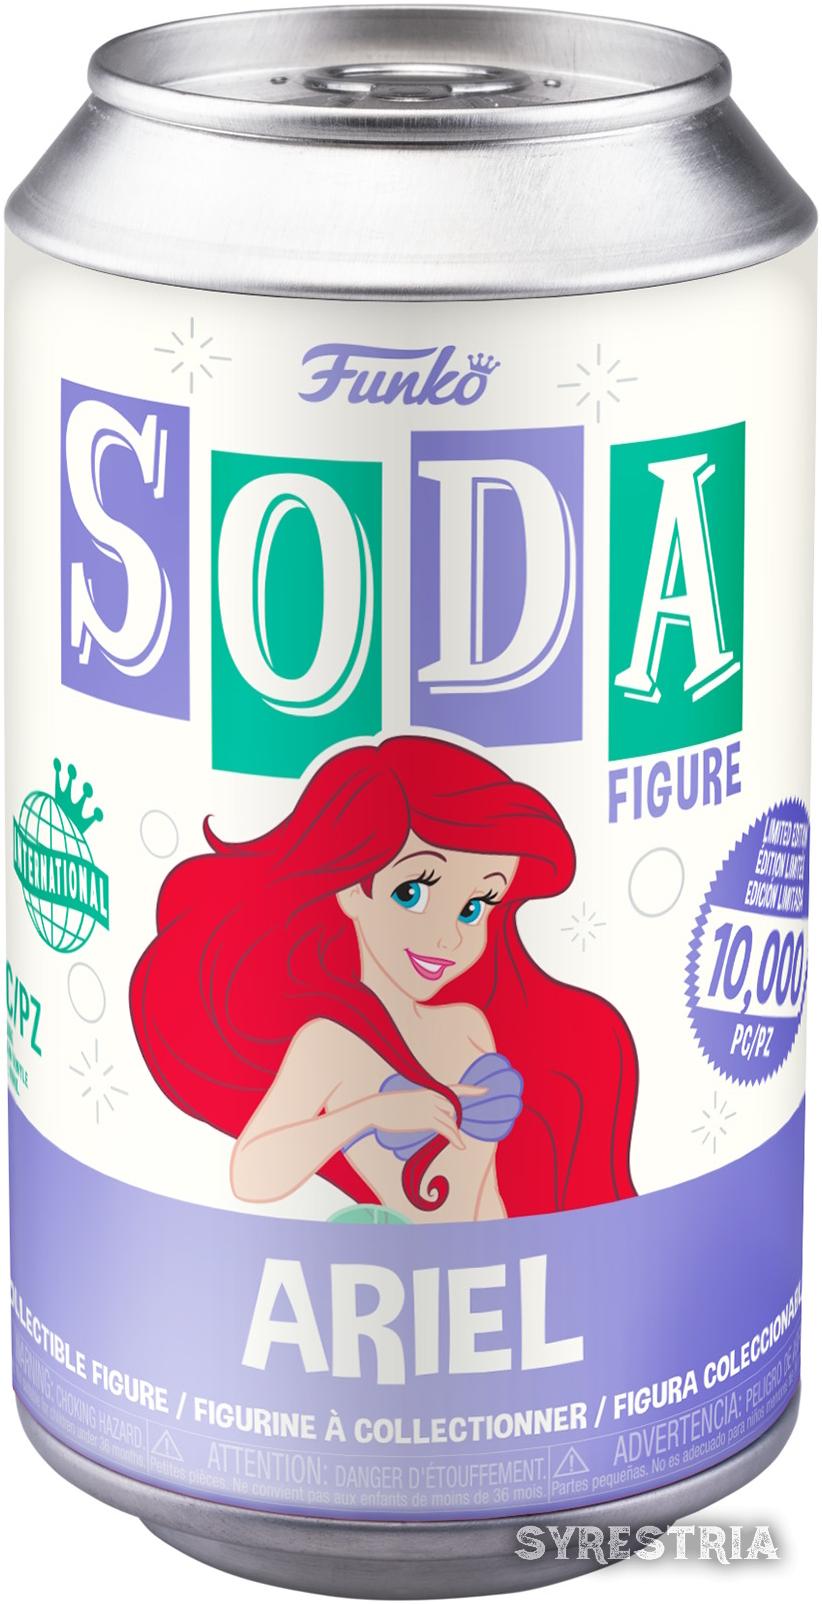 Little Mermaid Ariel   - Funko Soda